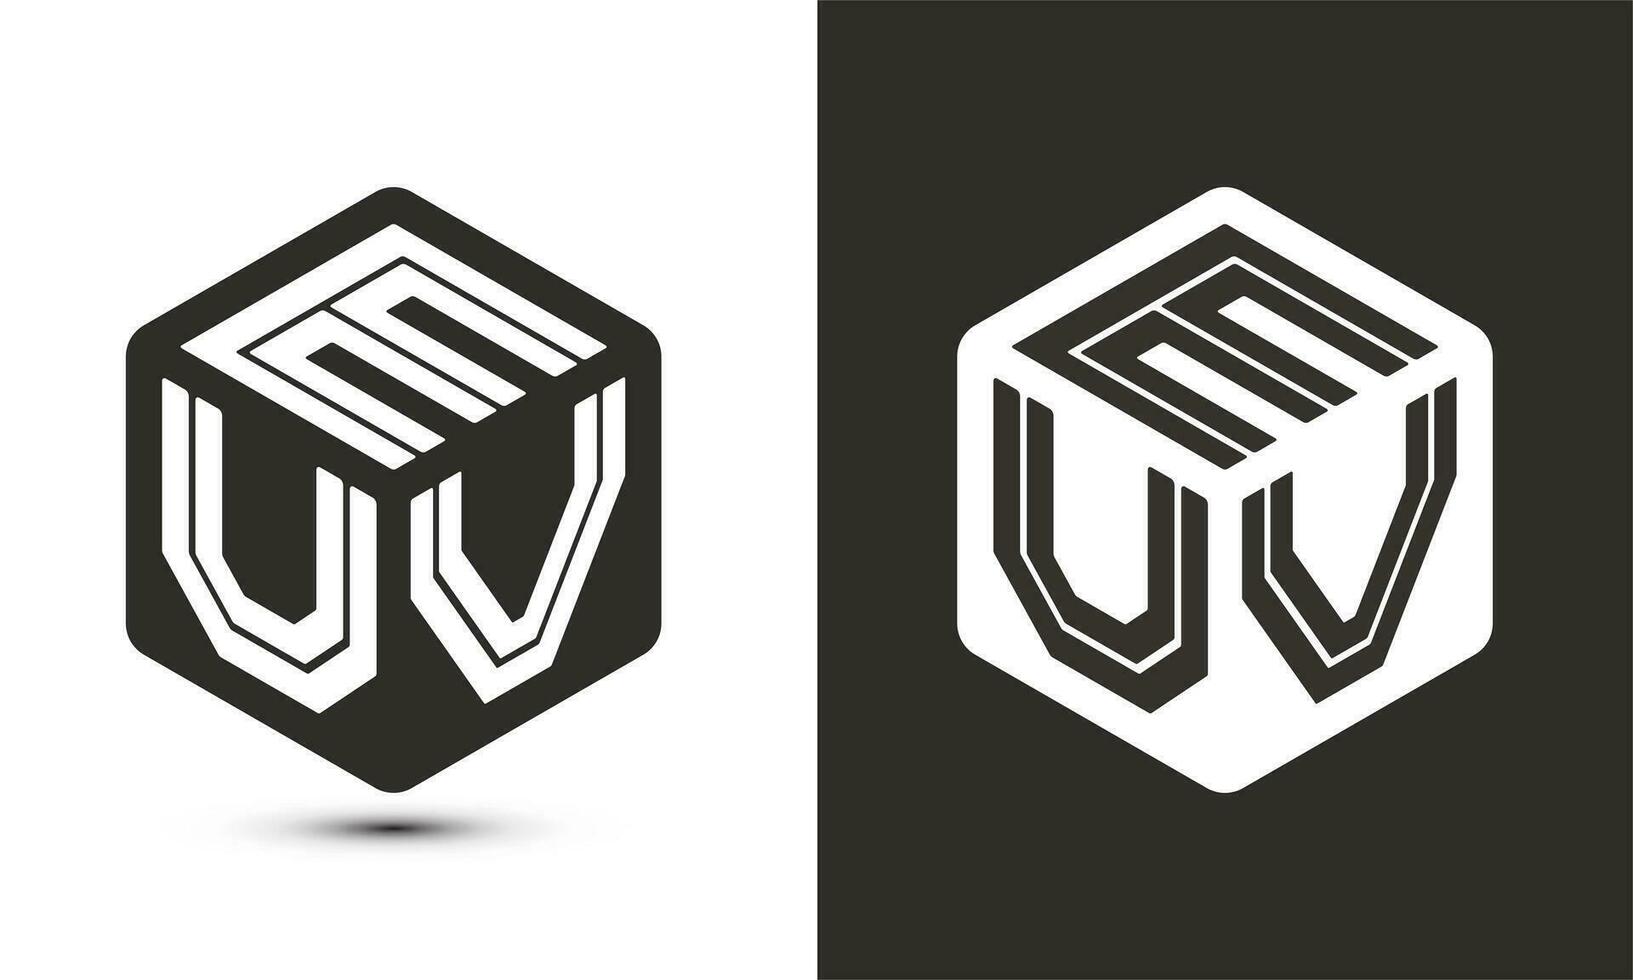 euv brief logo ontwerp met illustrator kubus logo, vector logo modern alfabet doopvont overlappen stijl.